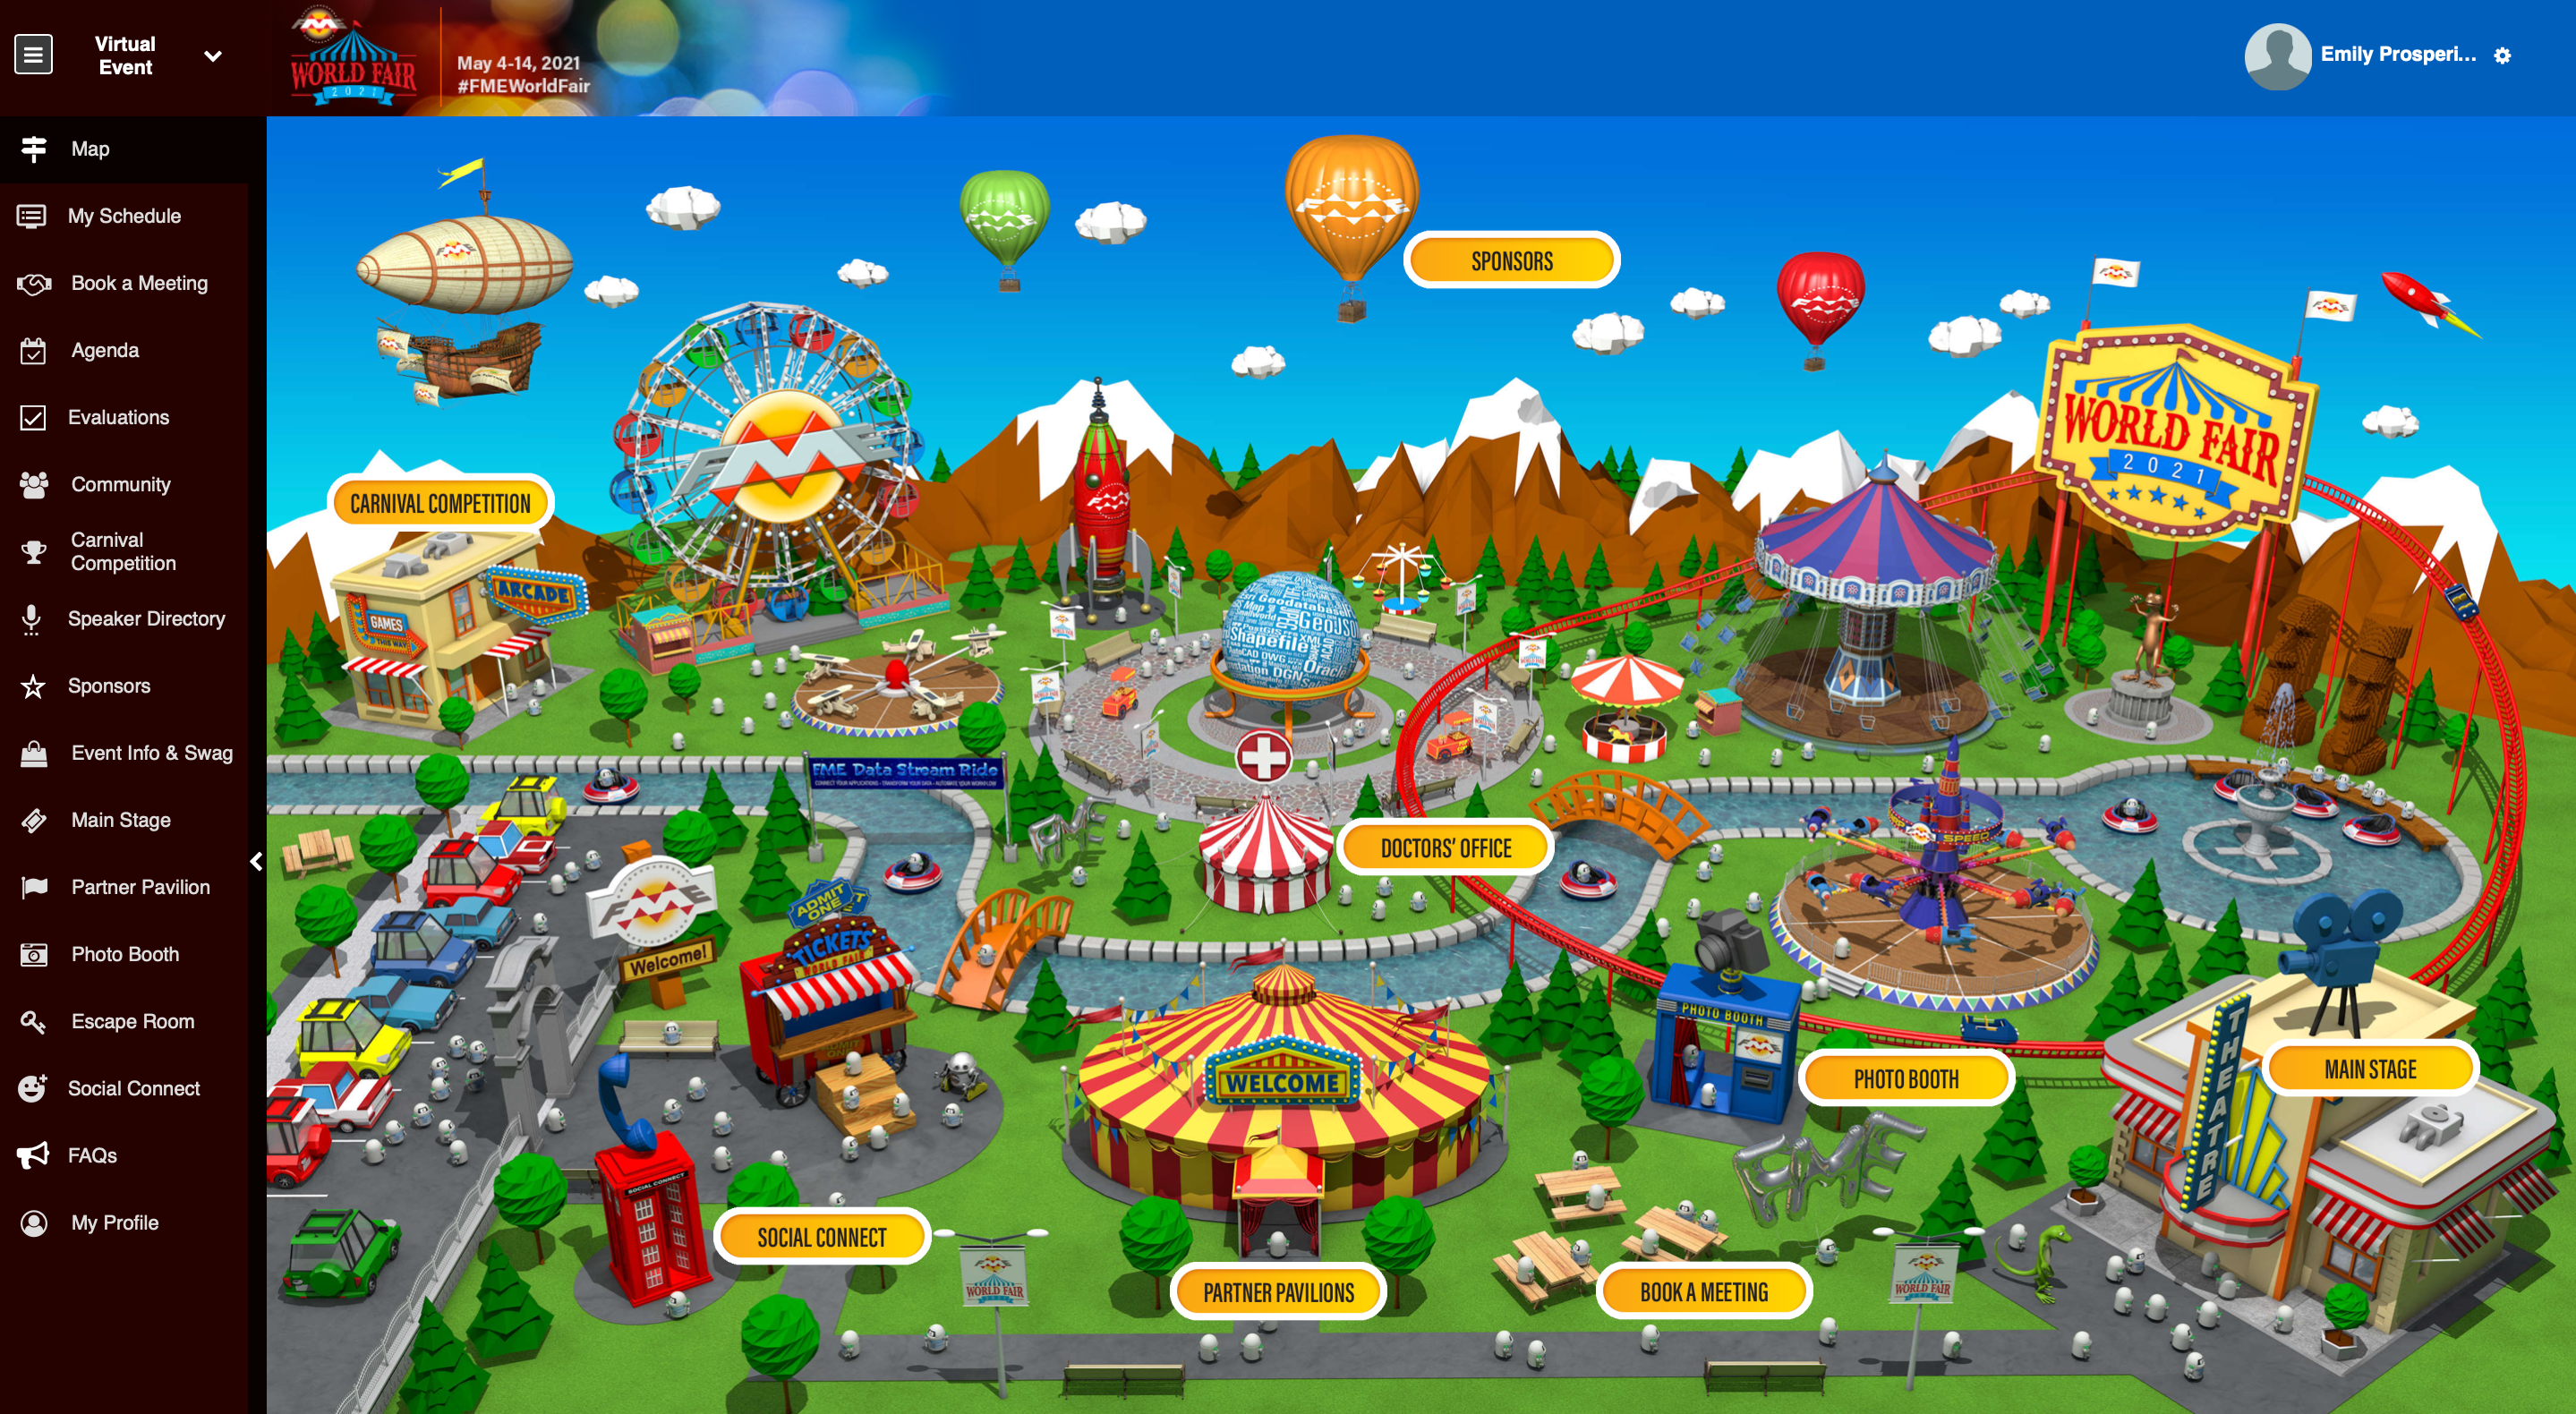 How FME World Fair - a Virtual Event - looks!